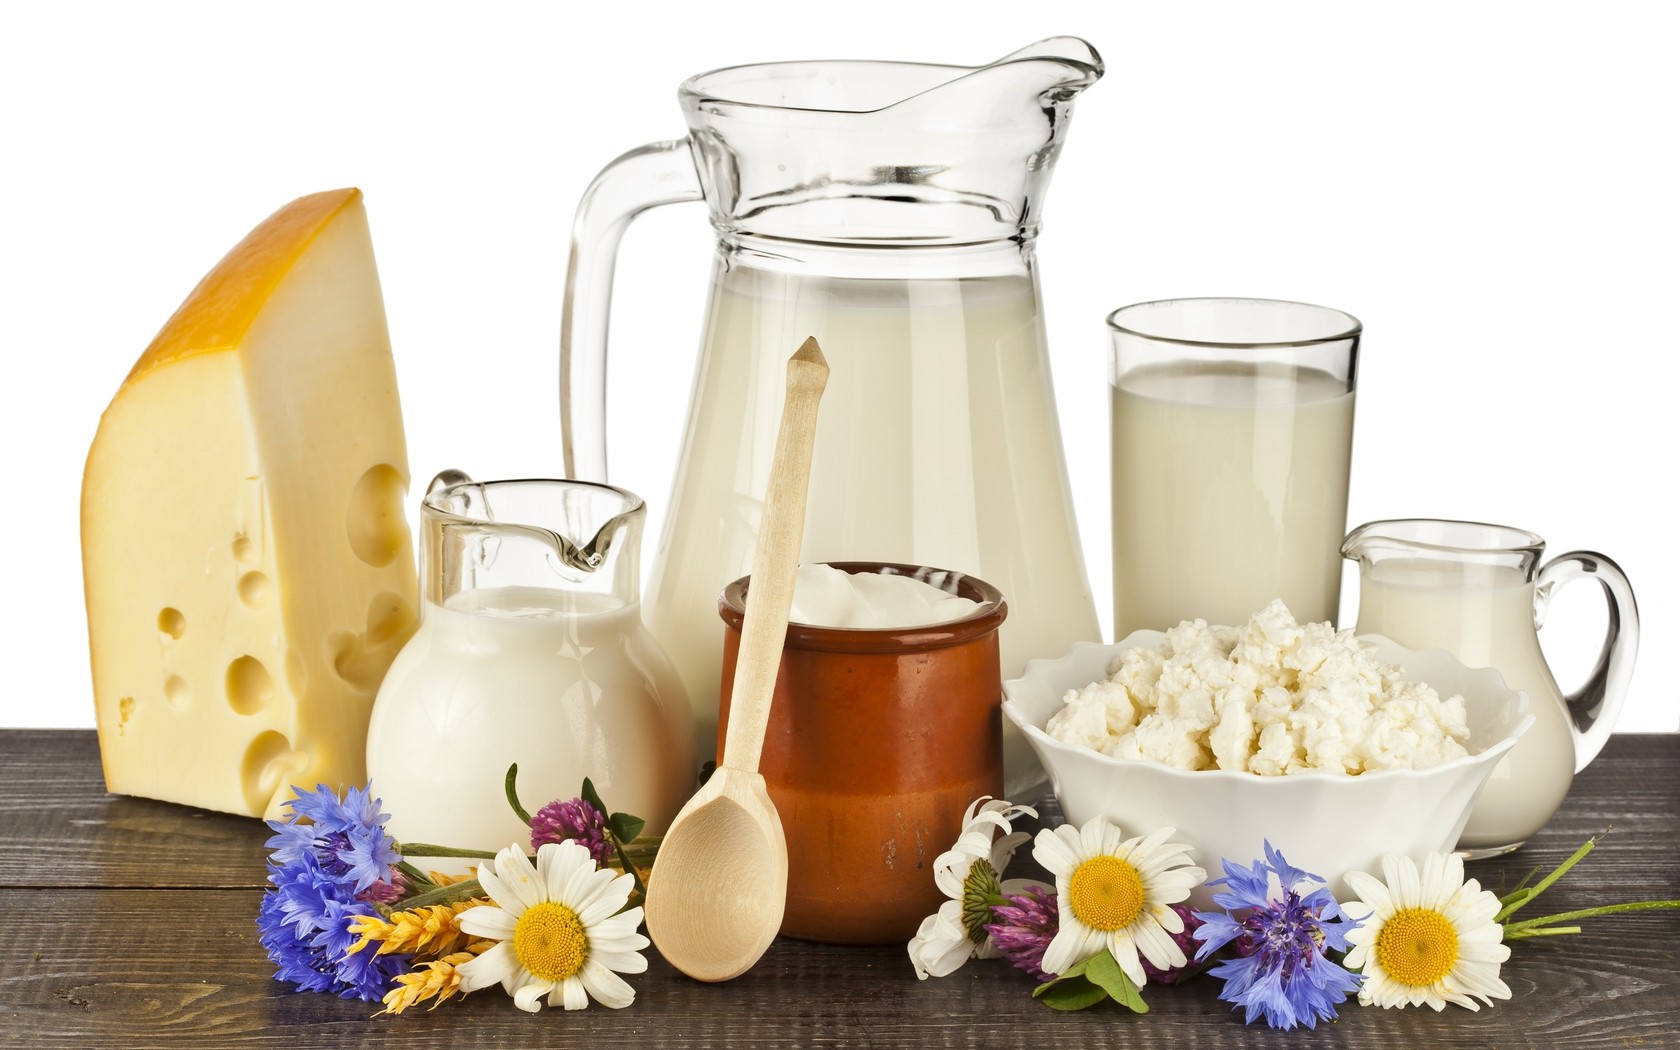 chất nhũ hóa trong sản xuất bơ sữa